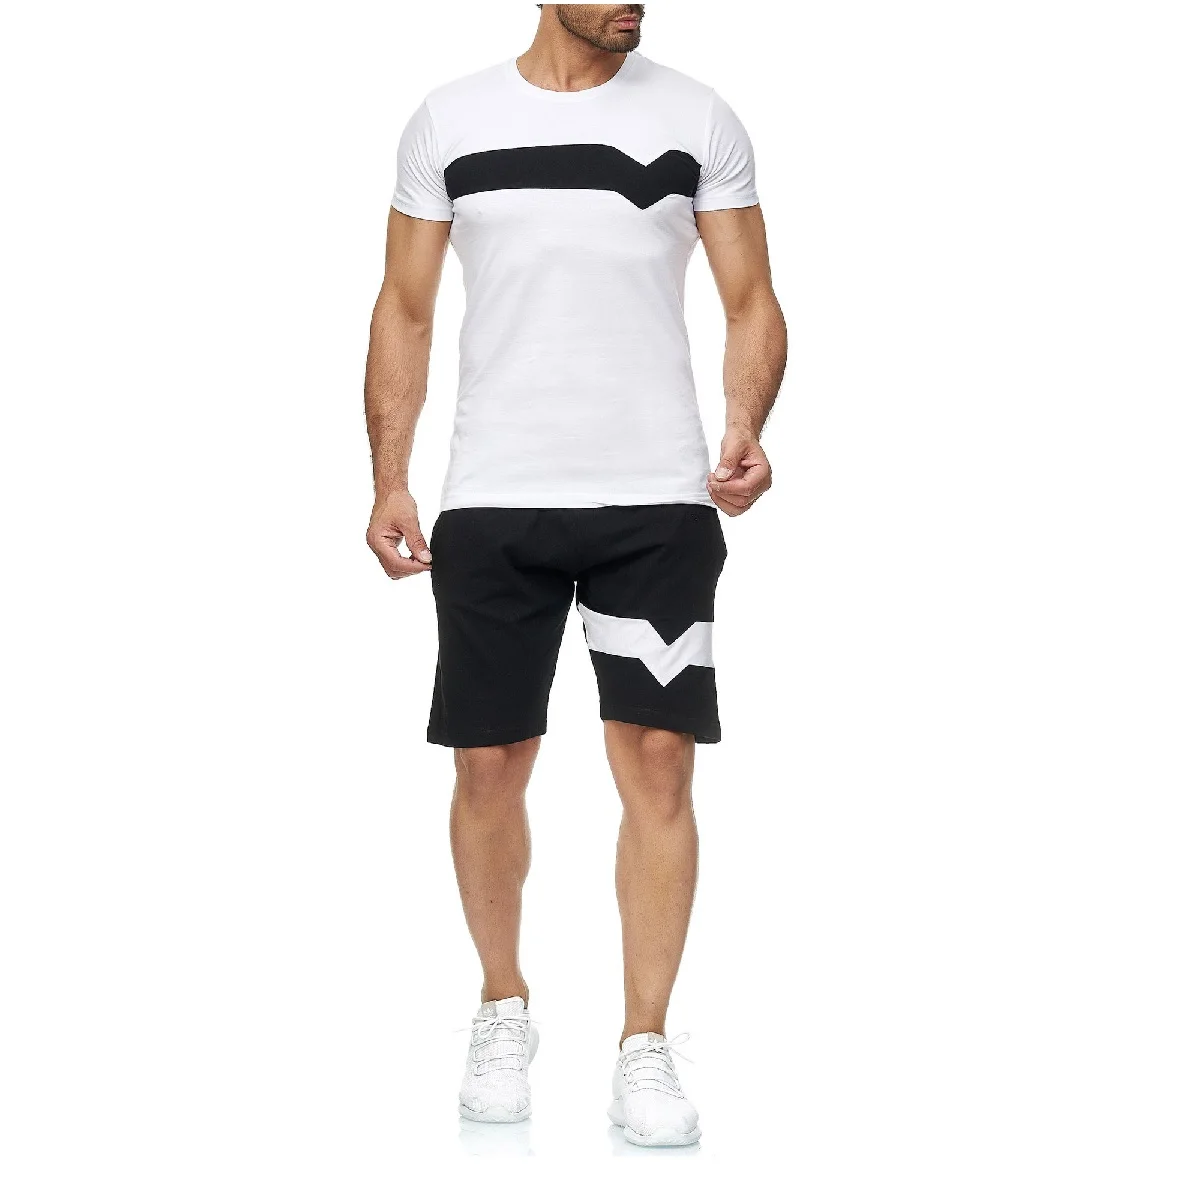 Men Short Sleeve Plain Tracksuit Set T Shirt Shorts Casual Sport Suit Activewear 